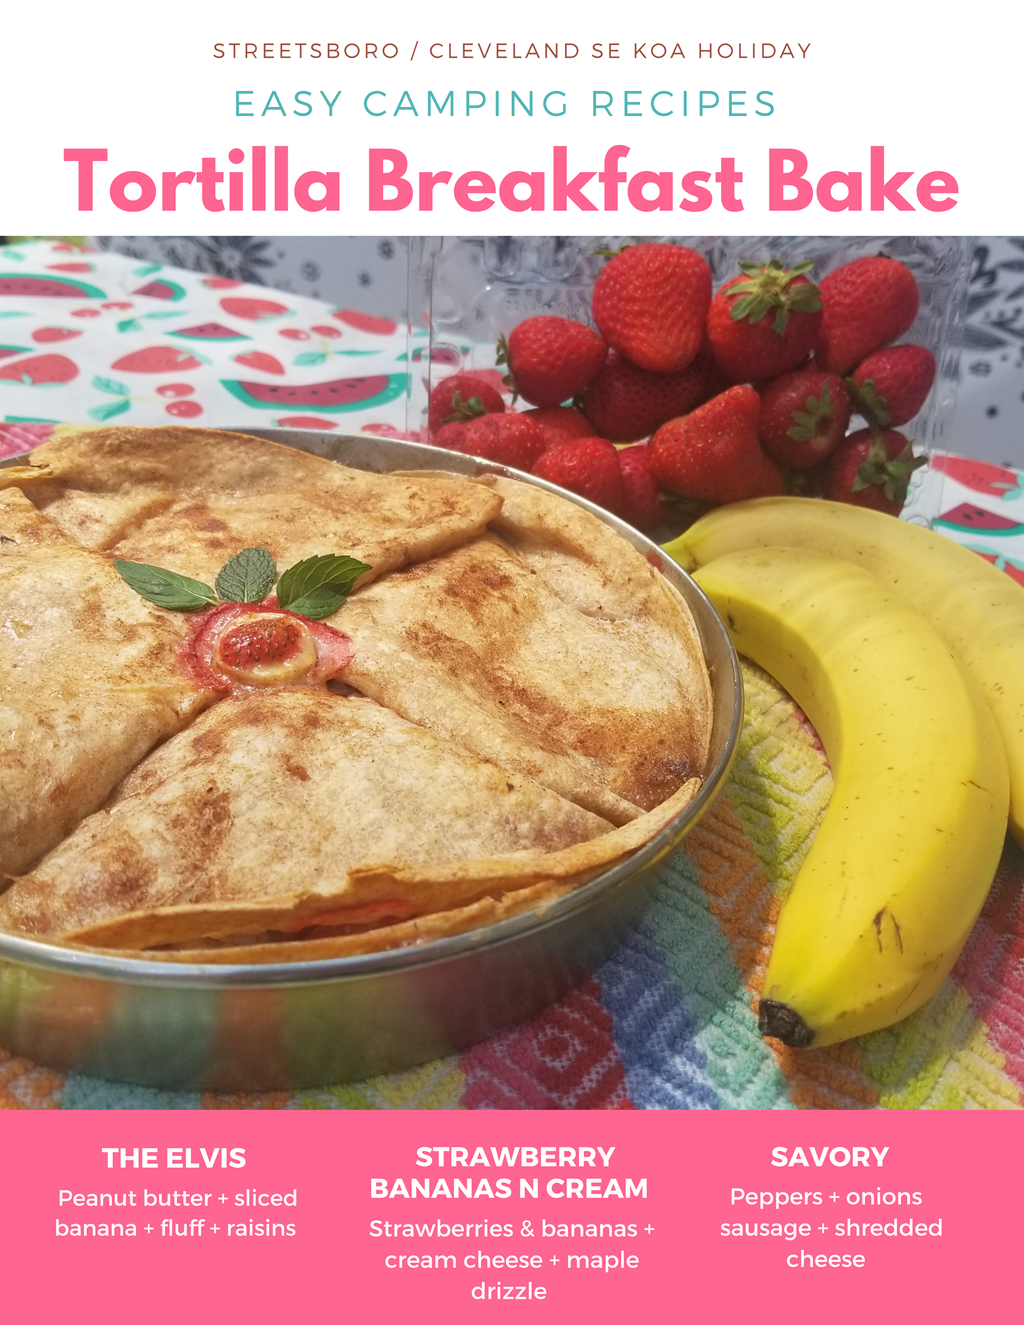 Tortilla Breakfast Bake